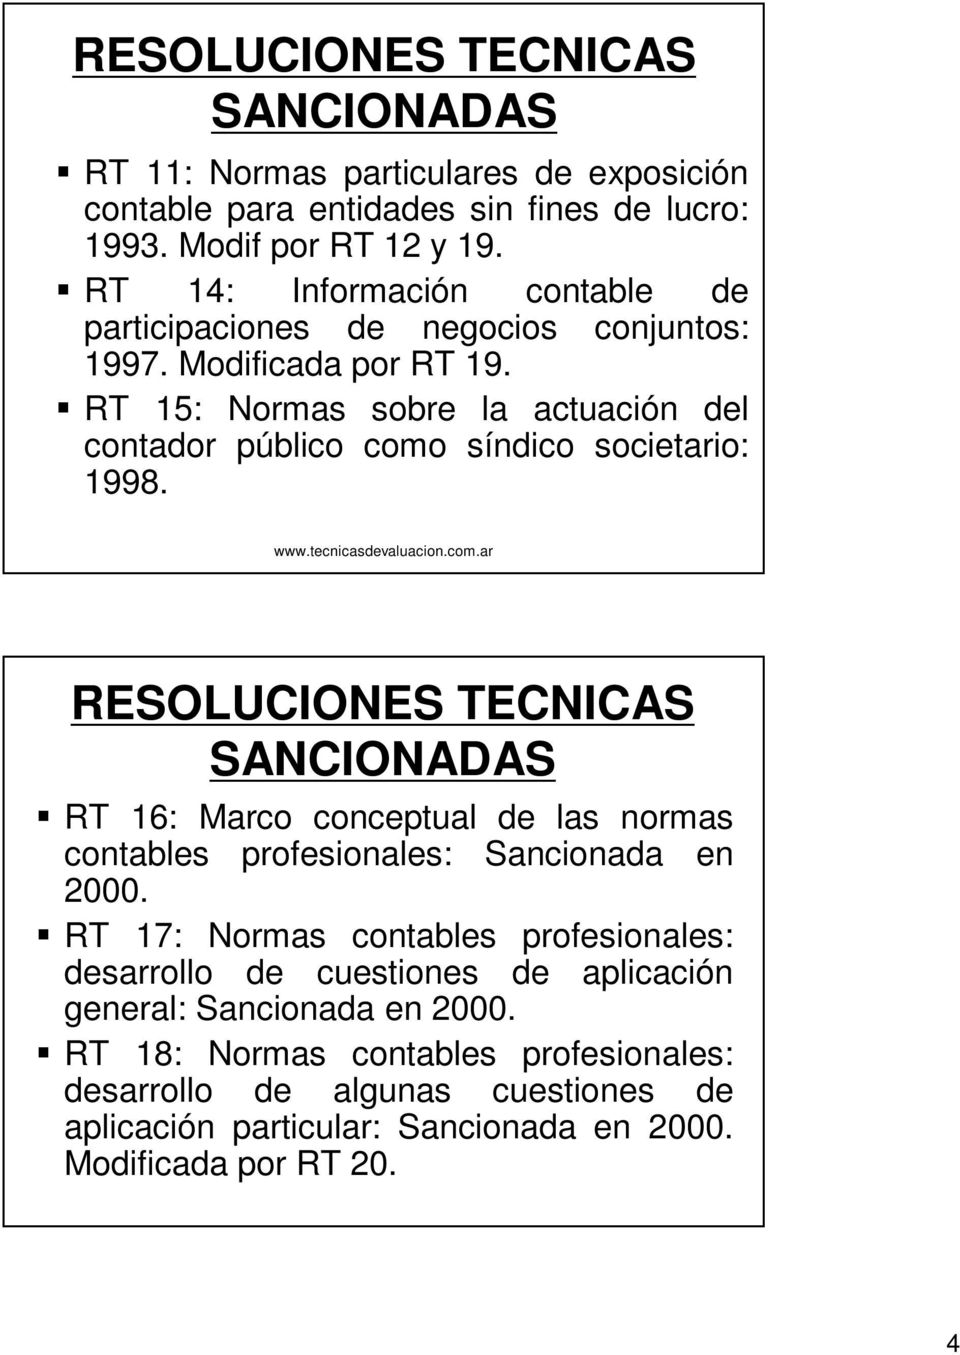 www.tecnicasdevaluacion.com.ar RESOLUCIONES TECNICAS SANCIONADAS RT 16: Marco conceptual de las normas contables profesionales: Sancionada en 2000.